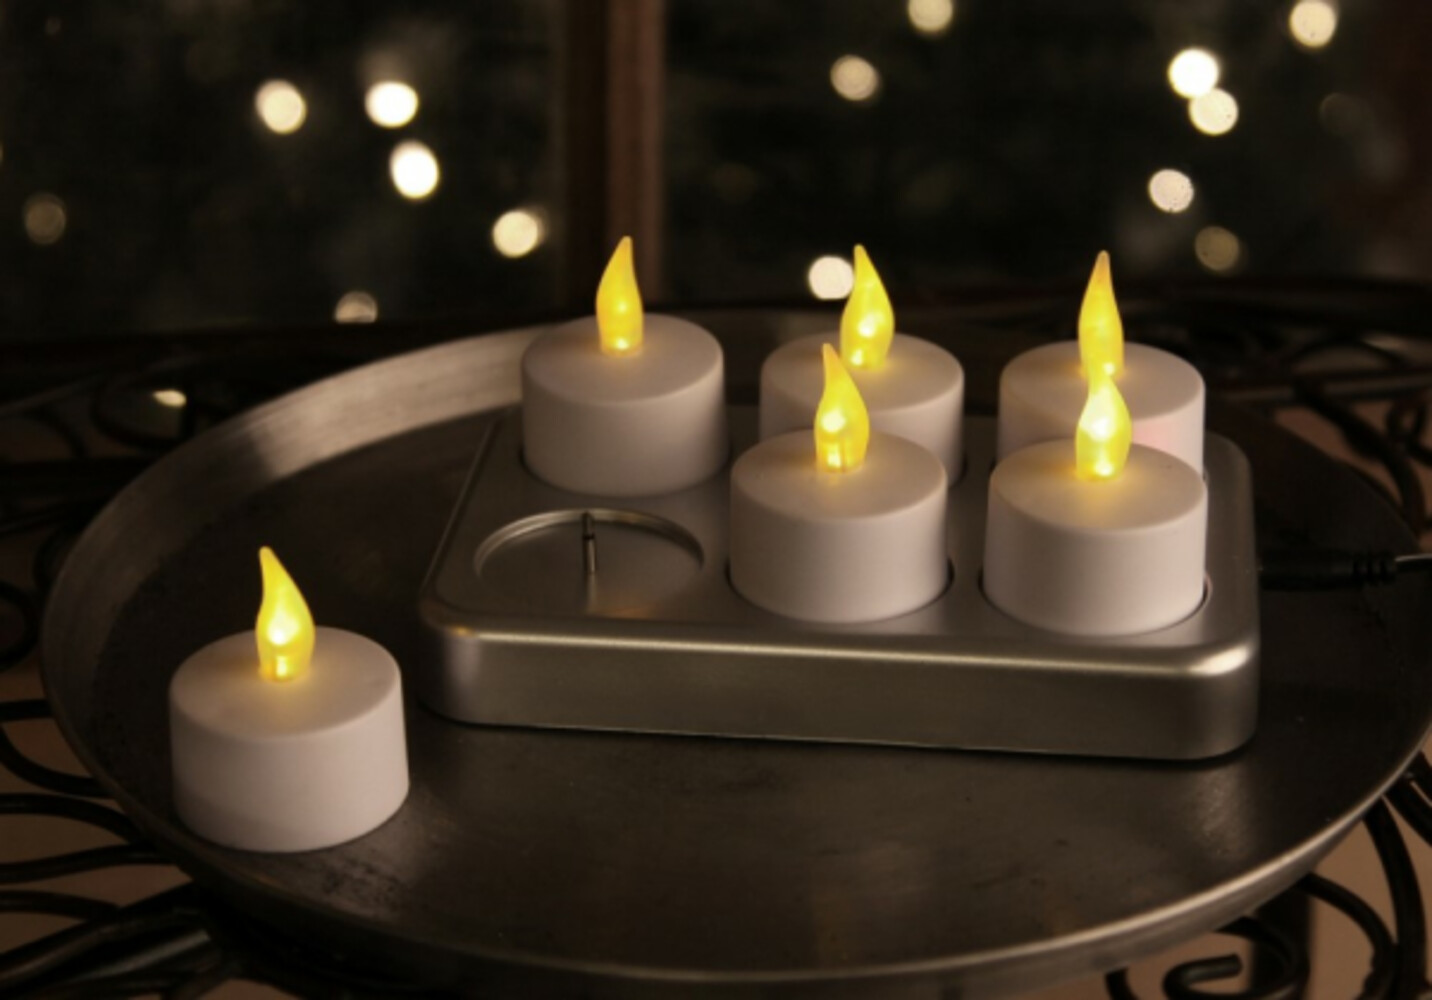 Wiederaufladbare LED Teelichter von Star Trading mit schöner flackernder weißer Beleuchtung